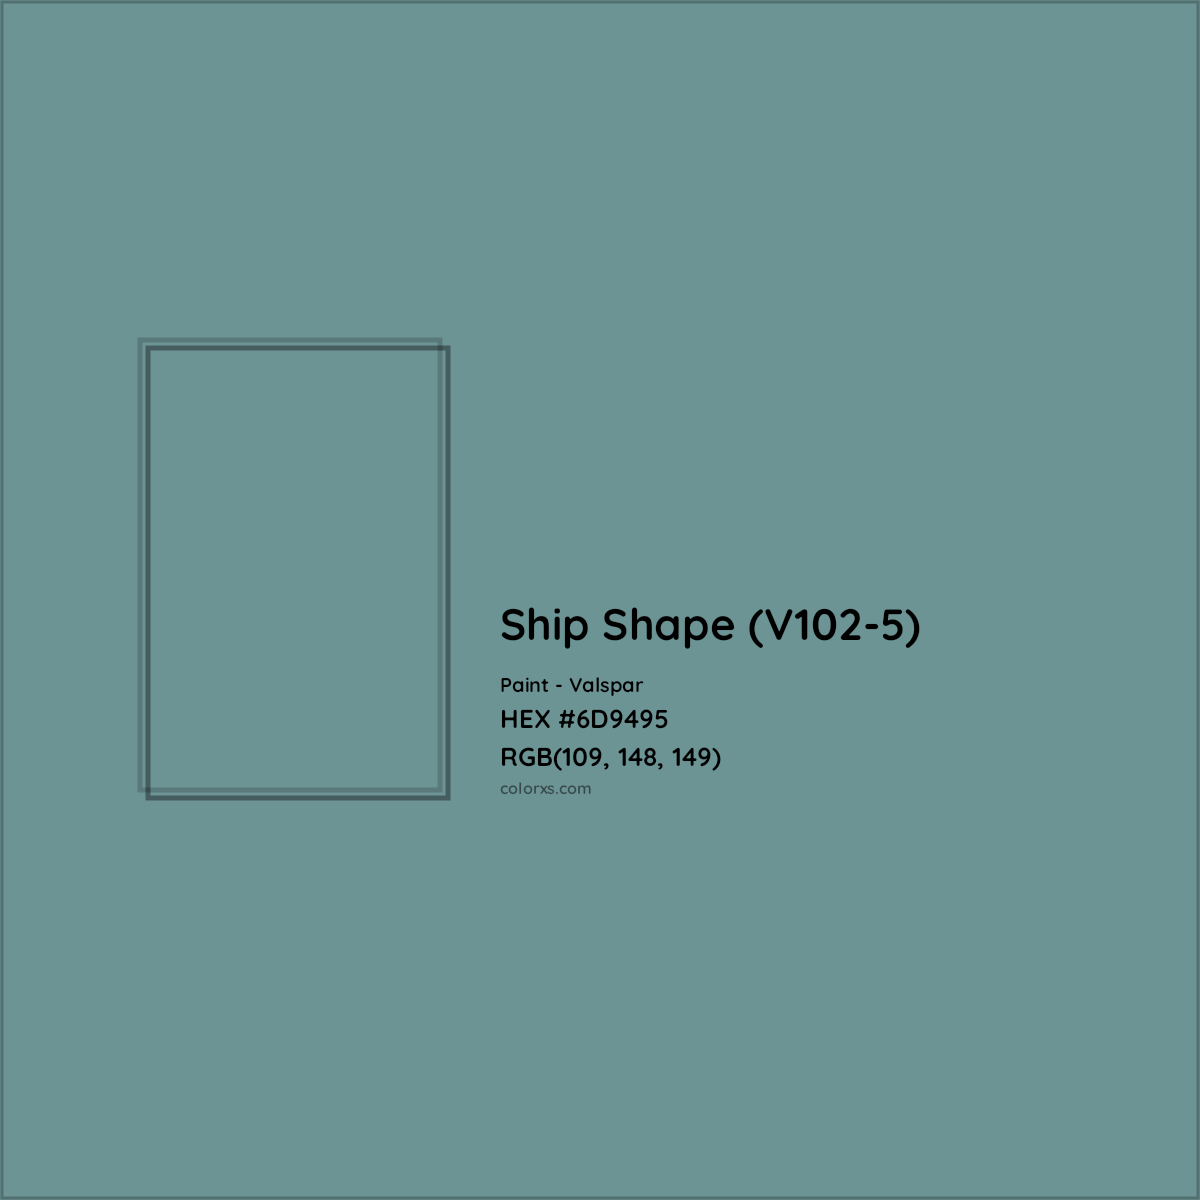 HEX #6D9495 Ship Shape (V102-5) Paint Valspar - Color Code